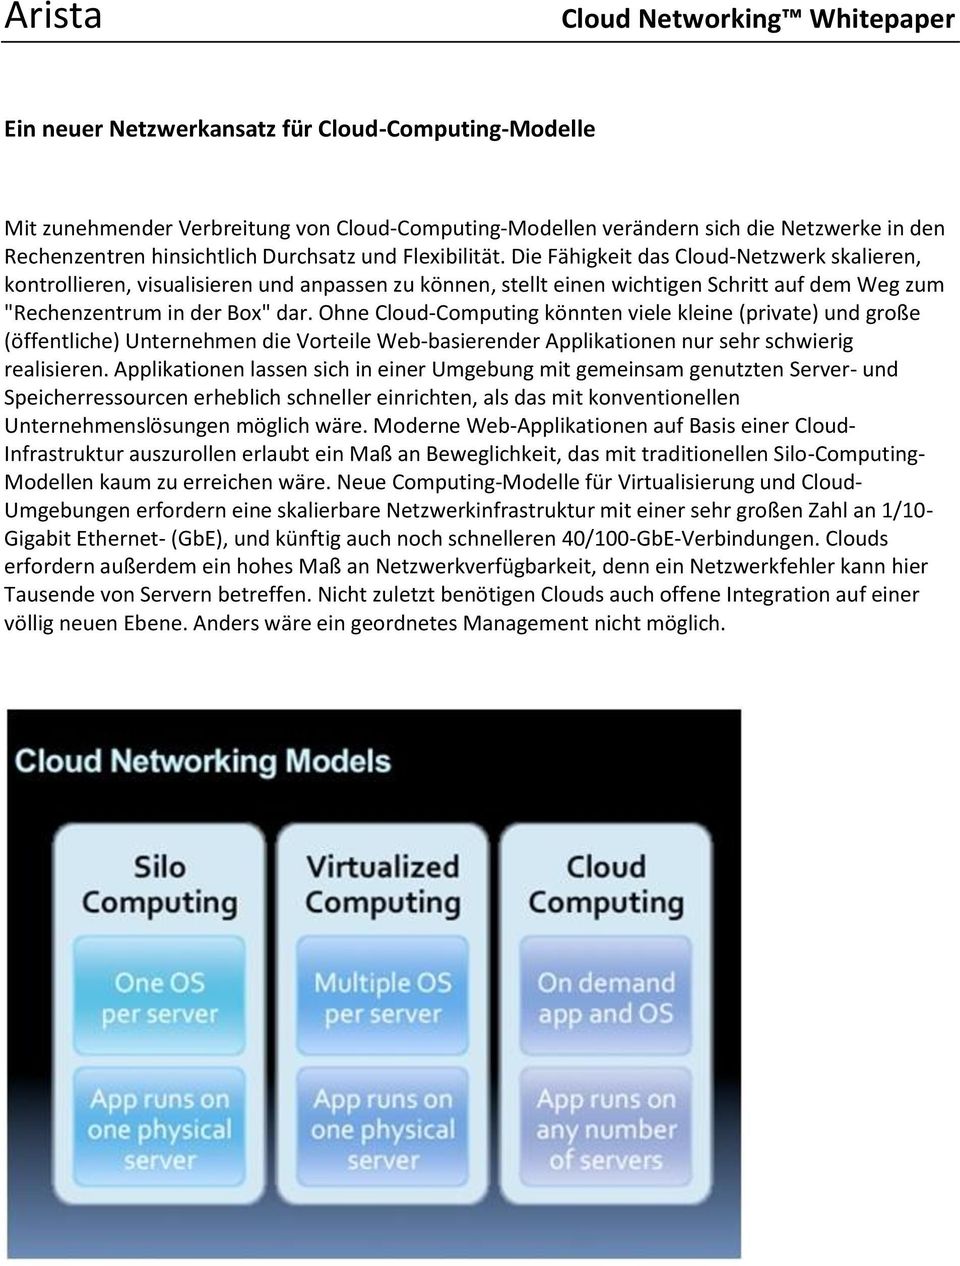 Die Fähigkeit das Cloud-Netzwerk skalieren, kontrollieren, visualisieren und anpassen zu können, stellt einen wichtigen Schritt auf dem Weg zum "Rechenzentrum in der Box" dar.